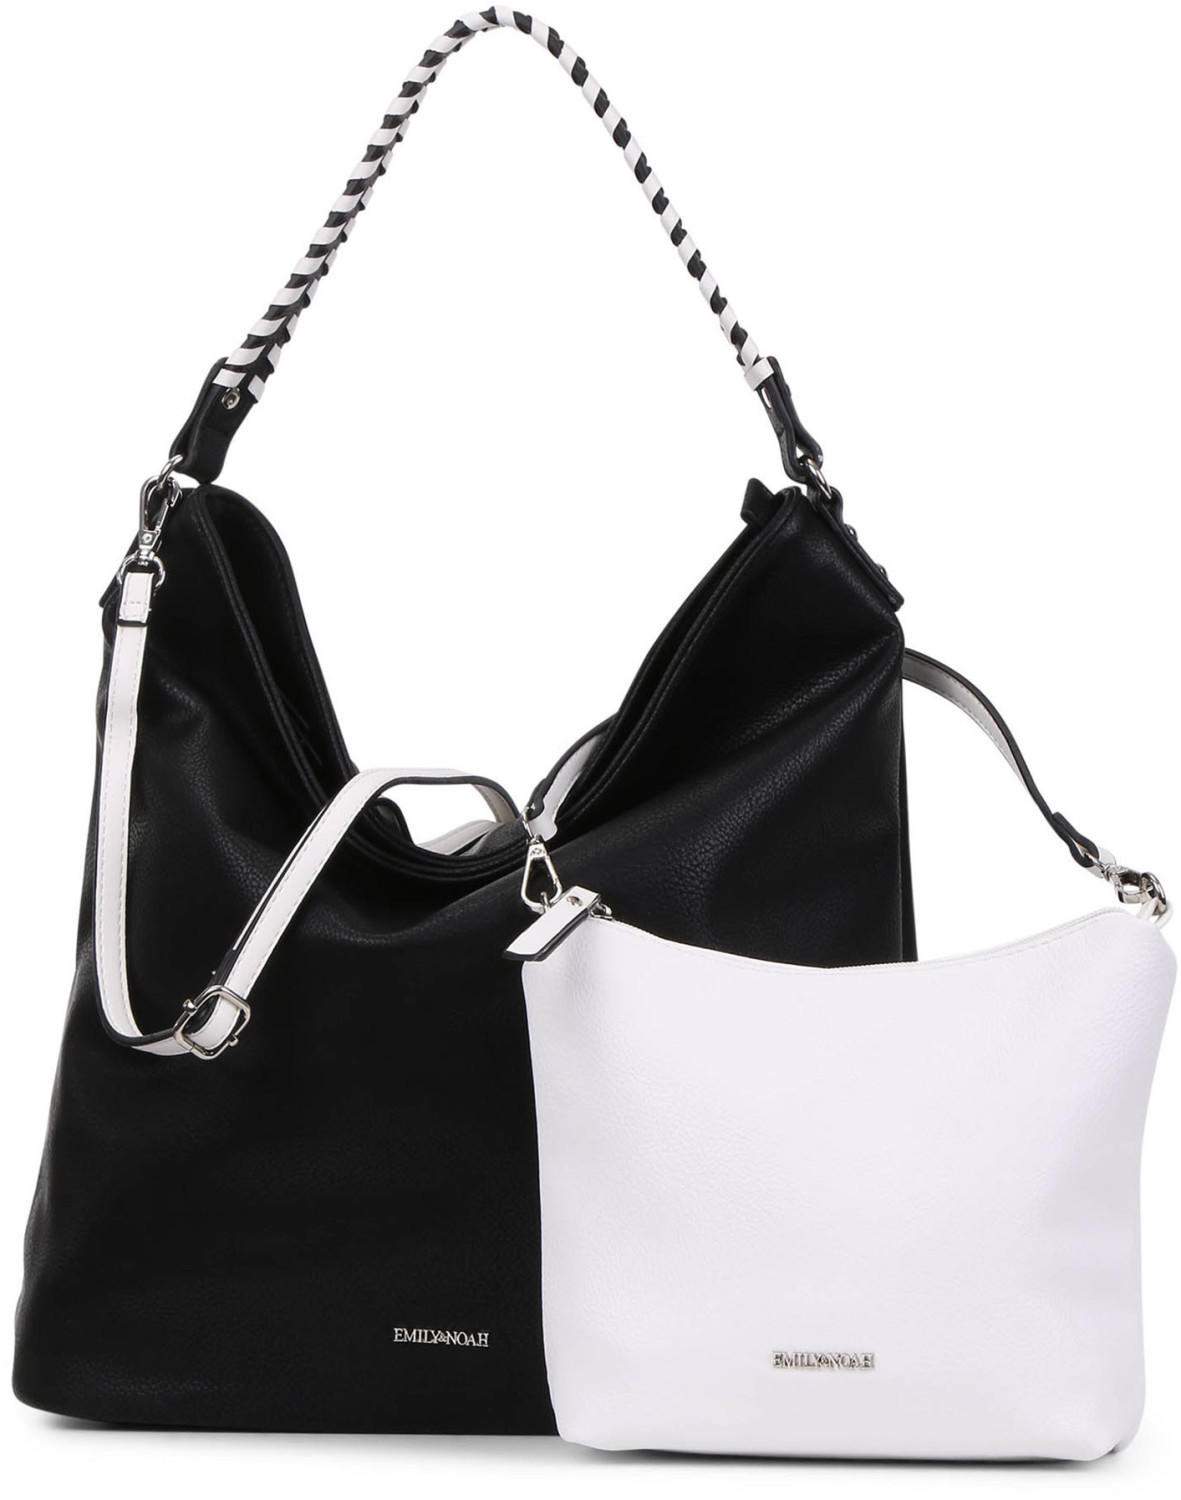 Desigual Cristal Paris Hand Bag Handtasche Tasche Negro Schwarz Weiß